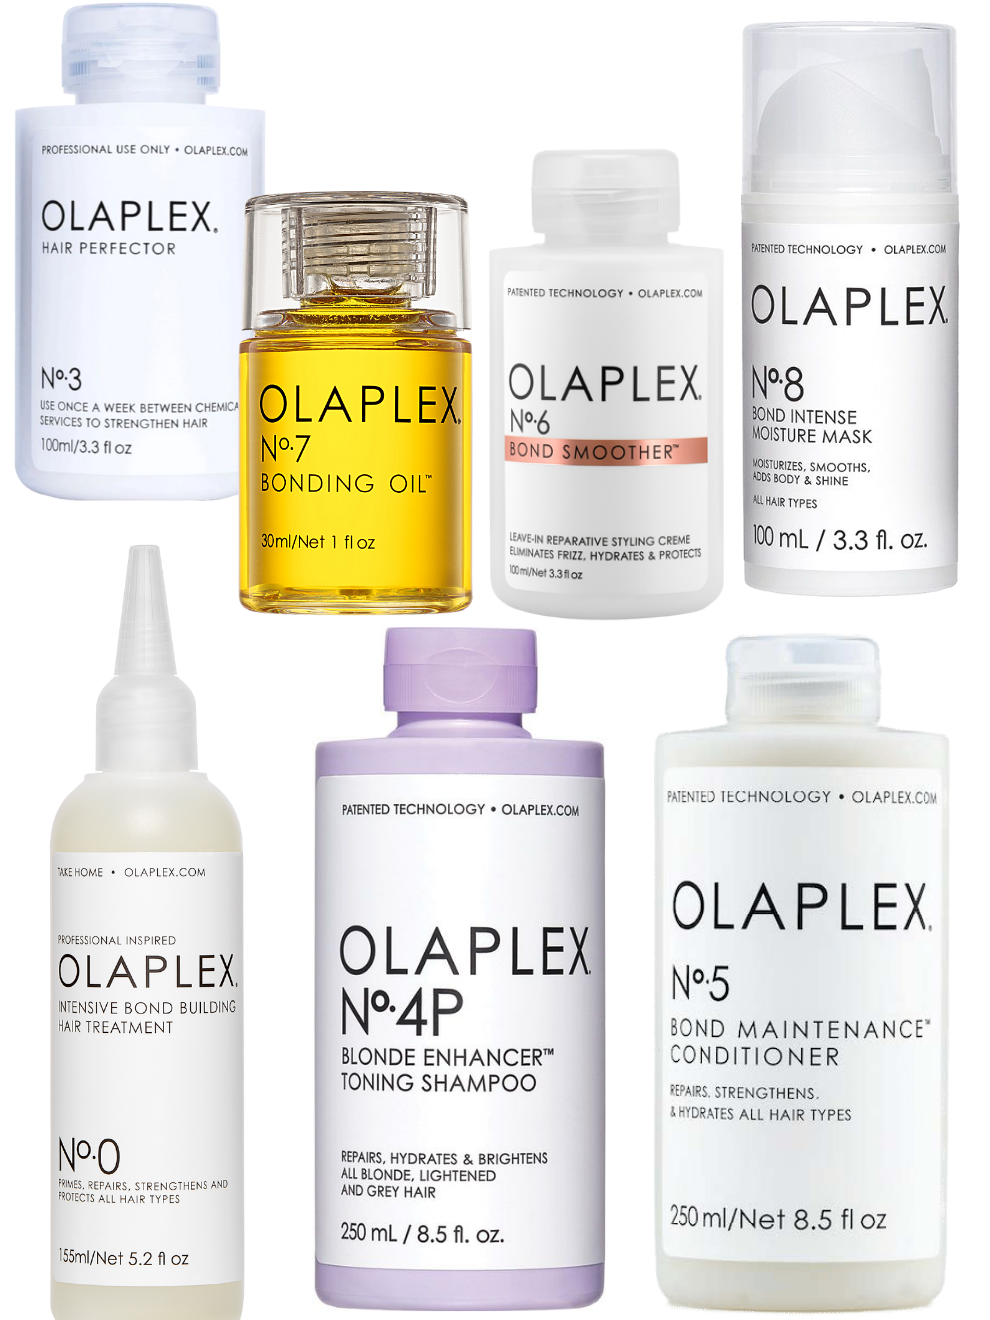 Olaplex Blonde Complete Collection Bundle (No. 0, 3, 4P, 5, 6, 7, 8)